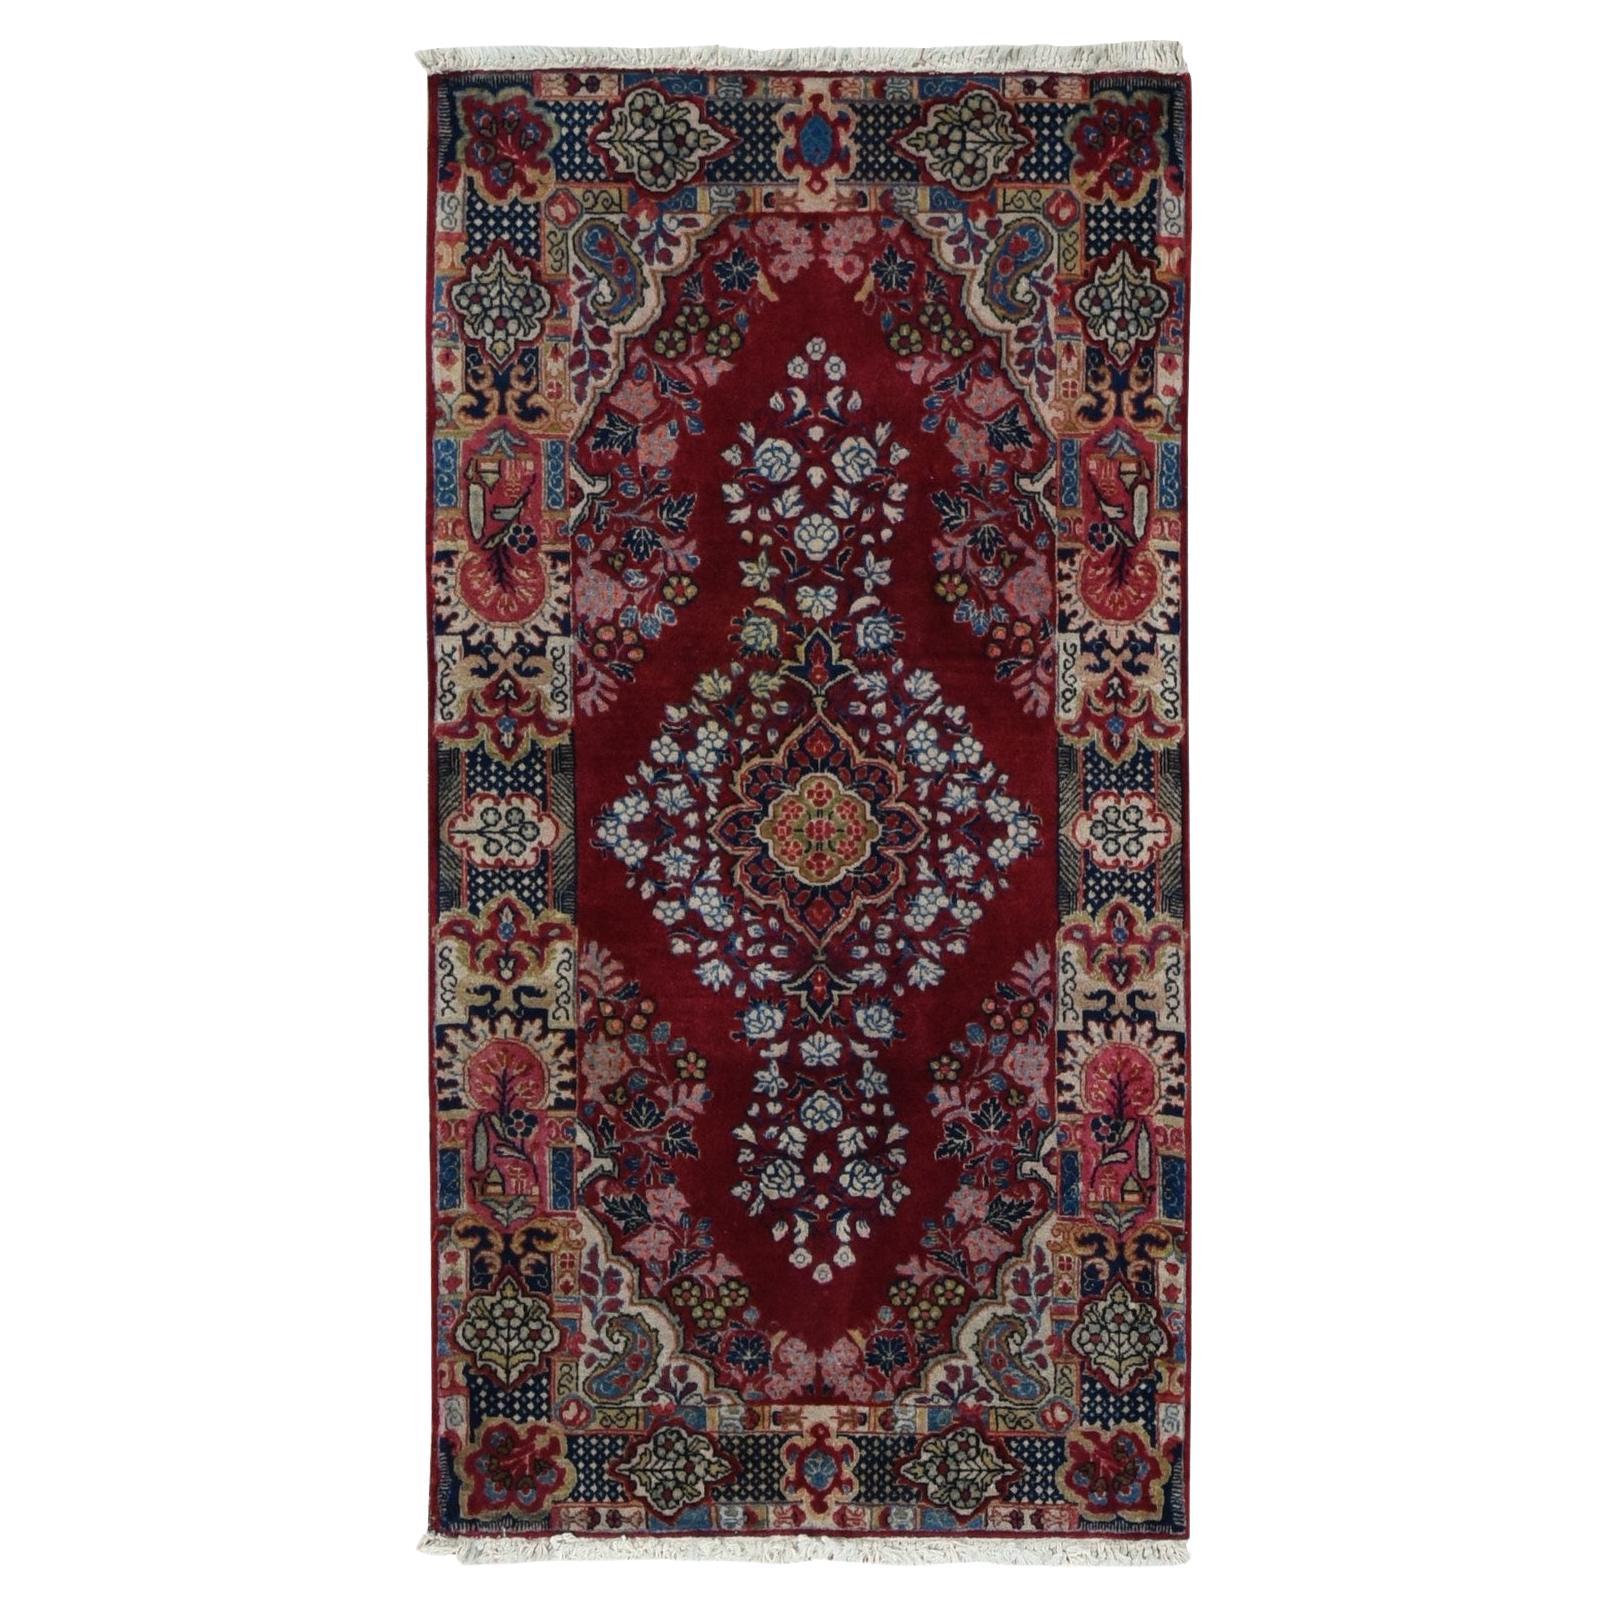 Roter antiker persischer Sarouk-Teppich in Rot, voller Flor, sauber und weich, handgeknüpft, 2'6"x4'10" im Angebot